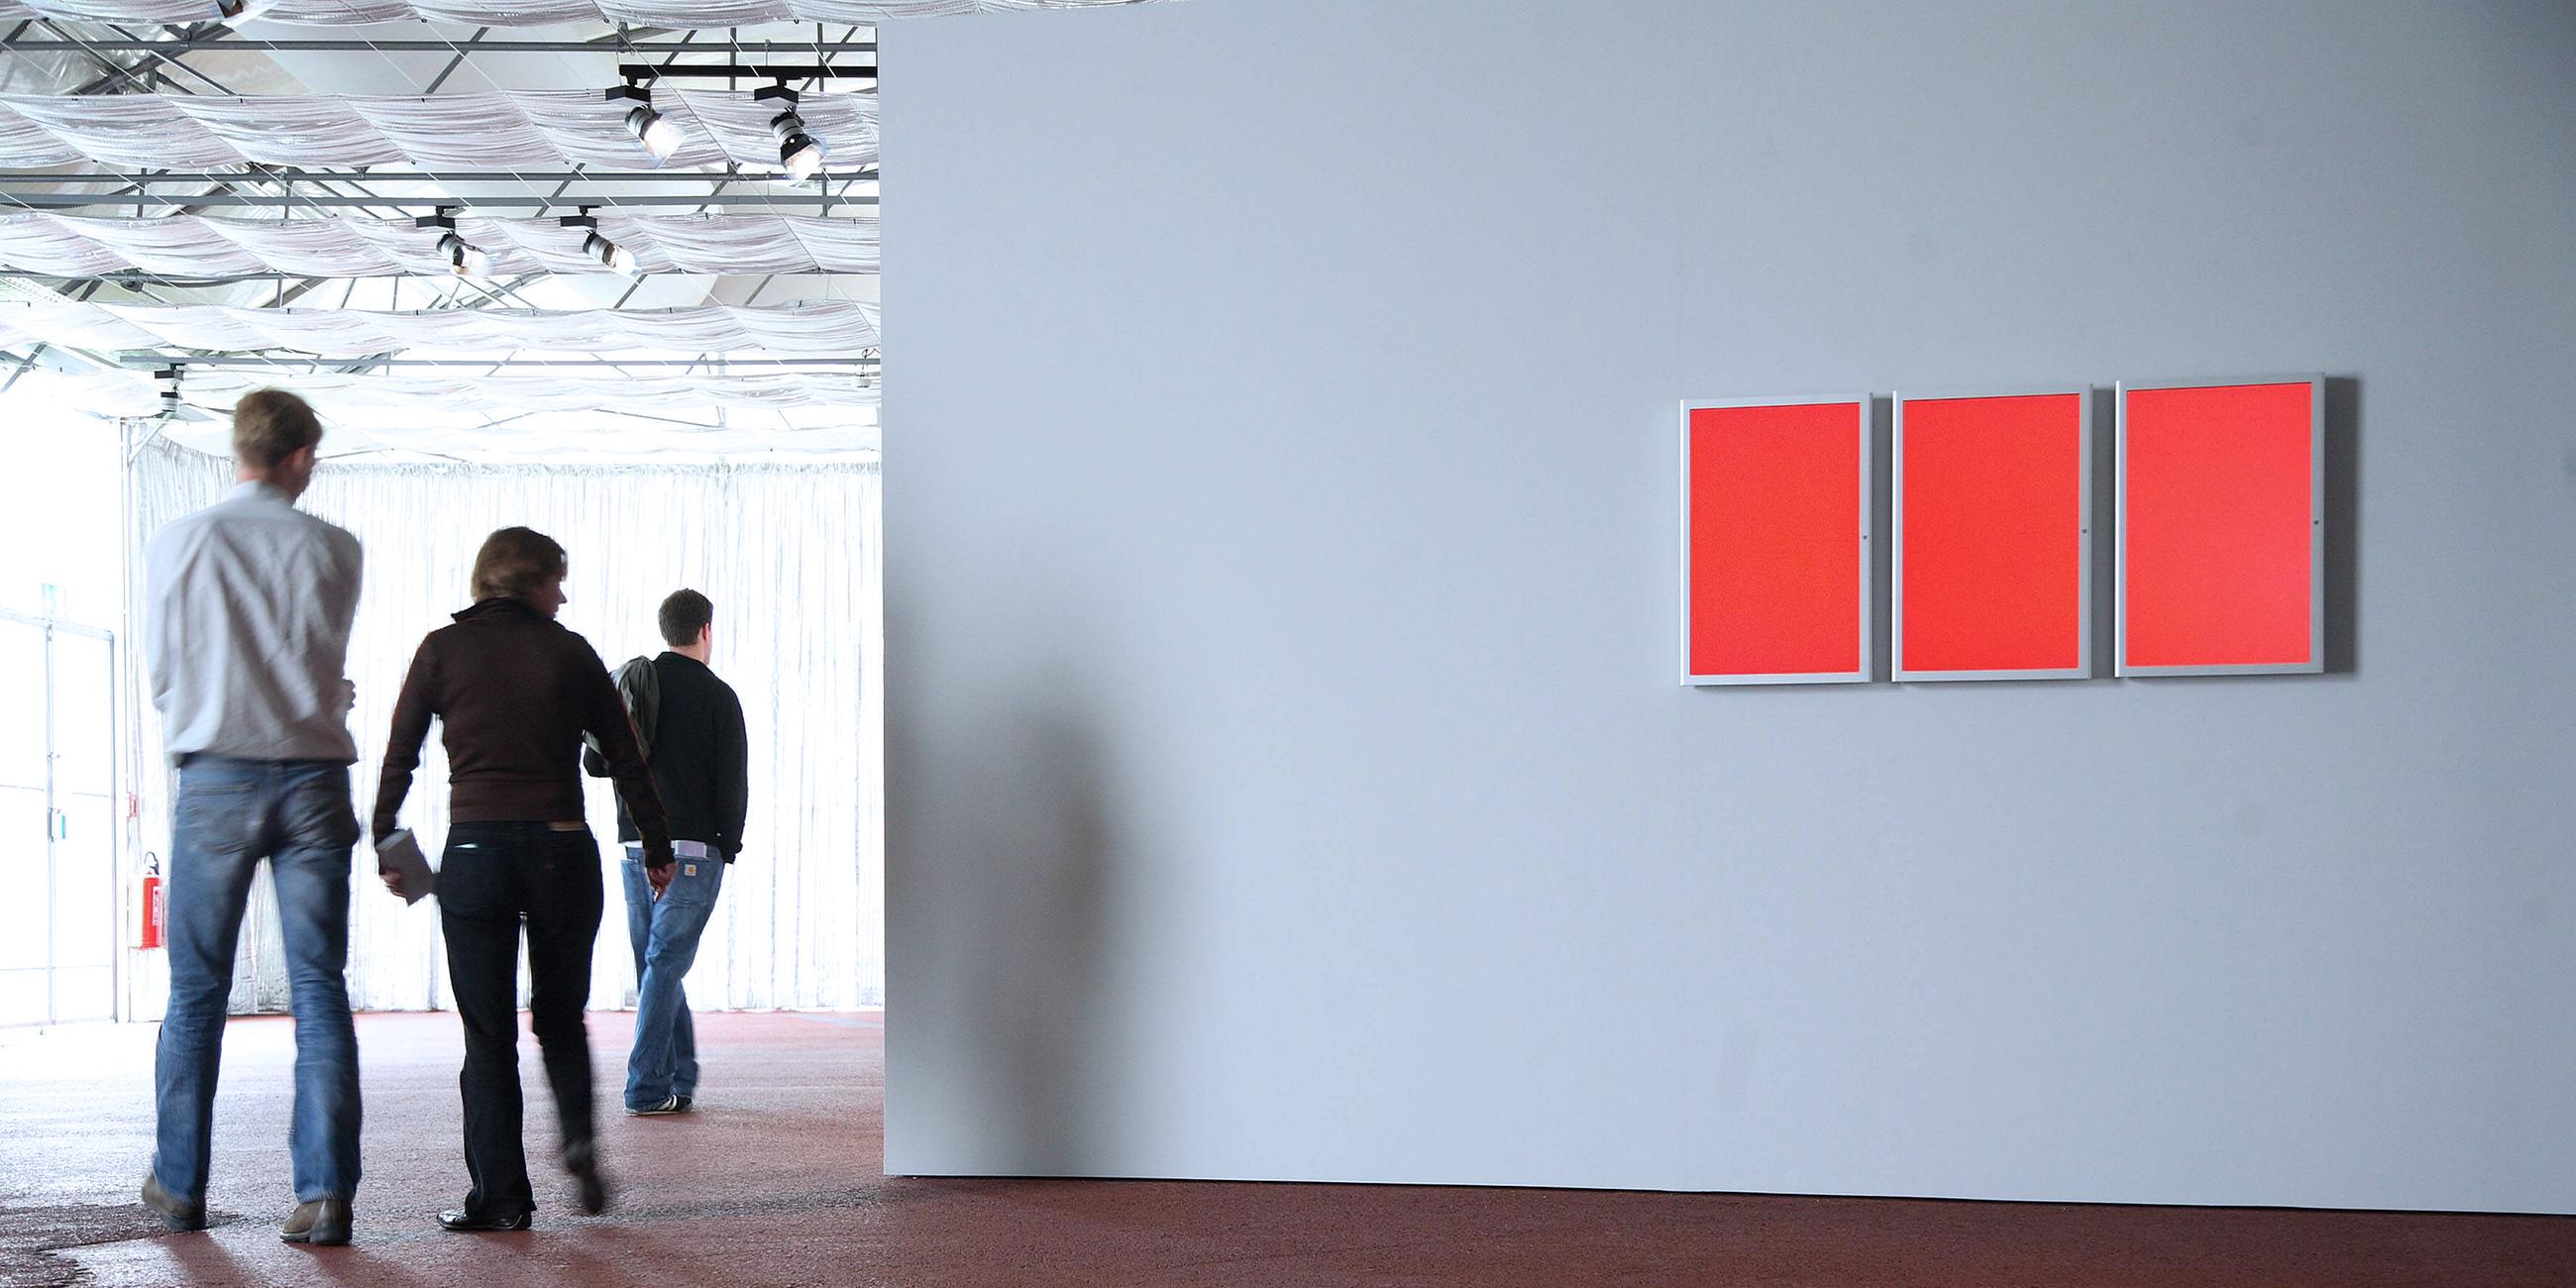 Archiv: Installation - Red Alert - von Hito Steyerl auf der Documenta XII in Kassel, aufgenommen am 22.08.2007